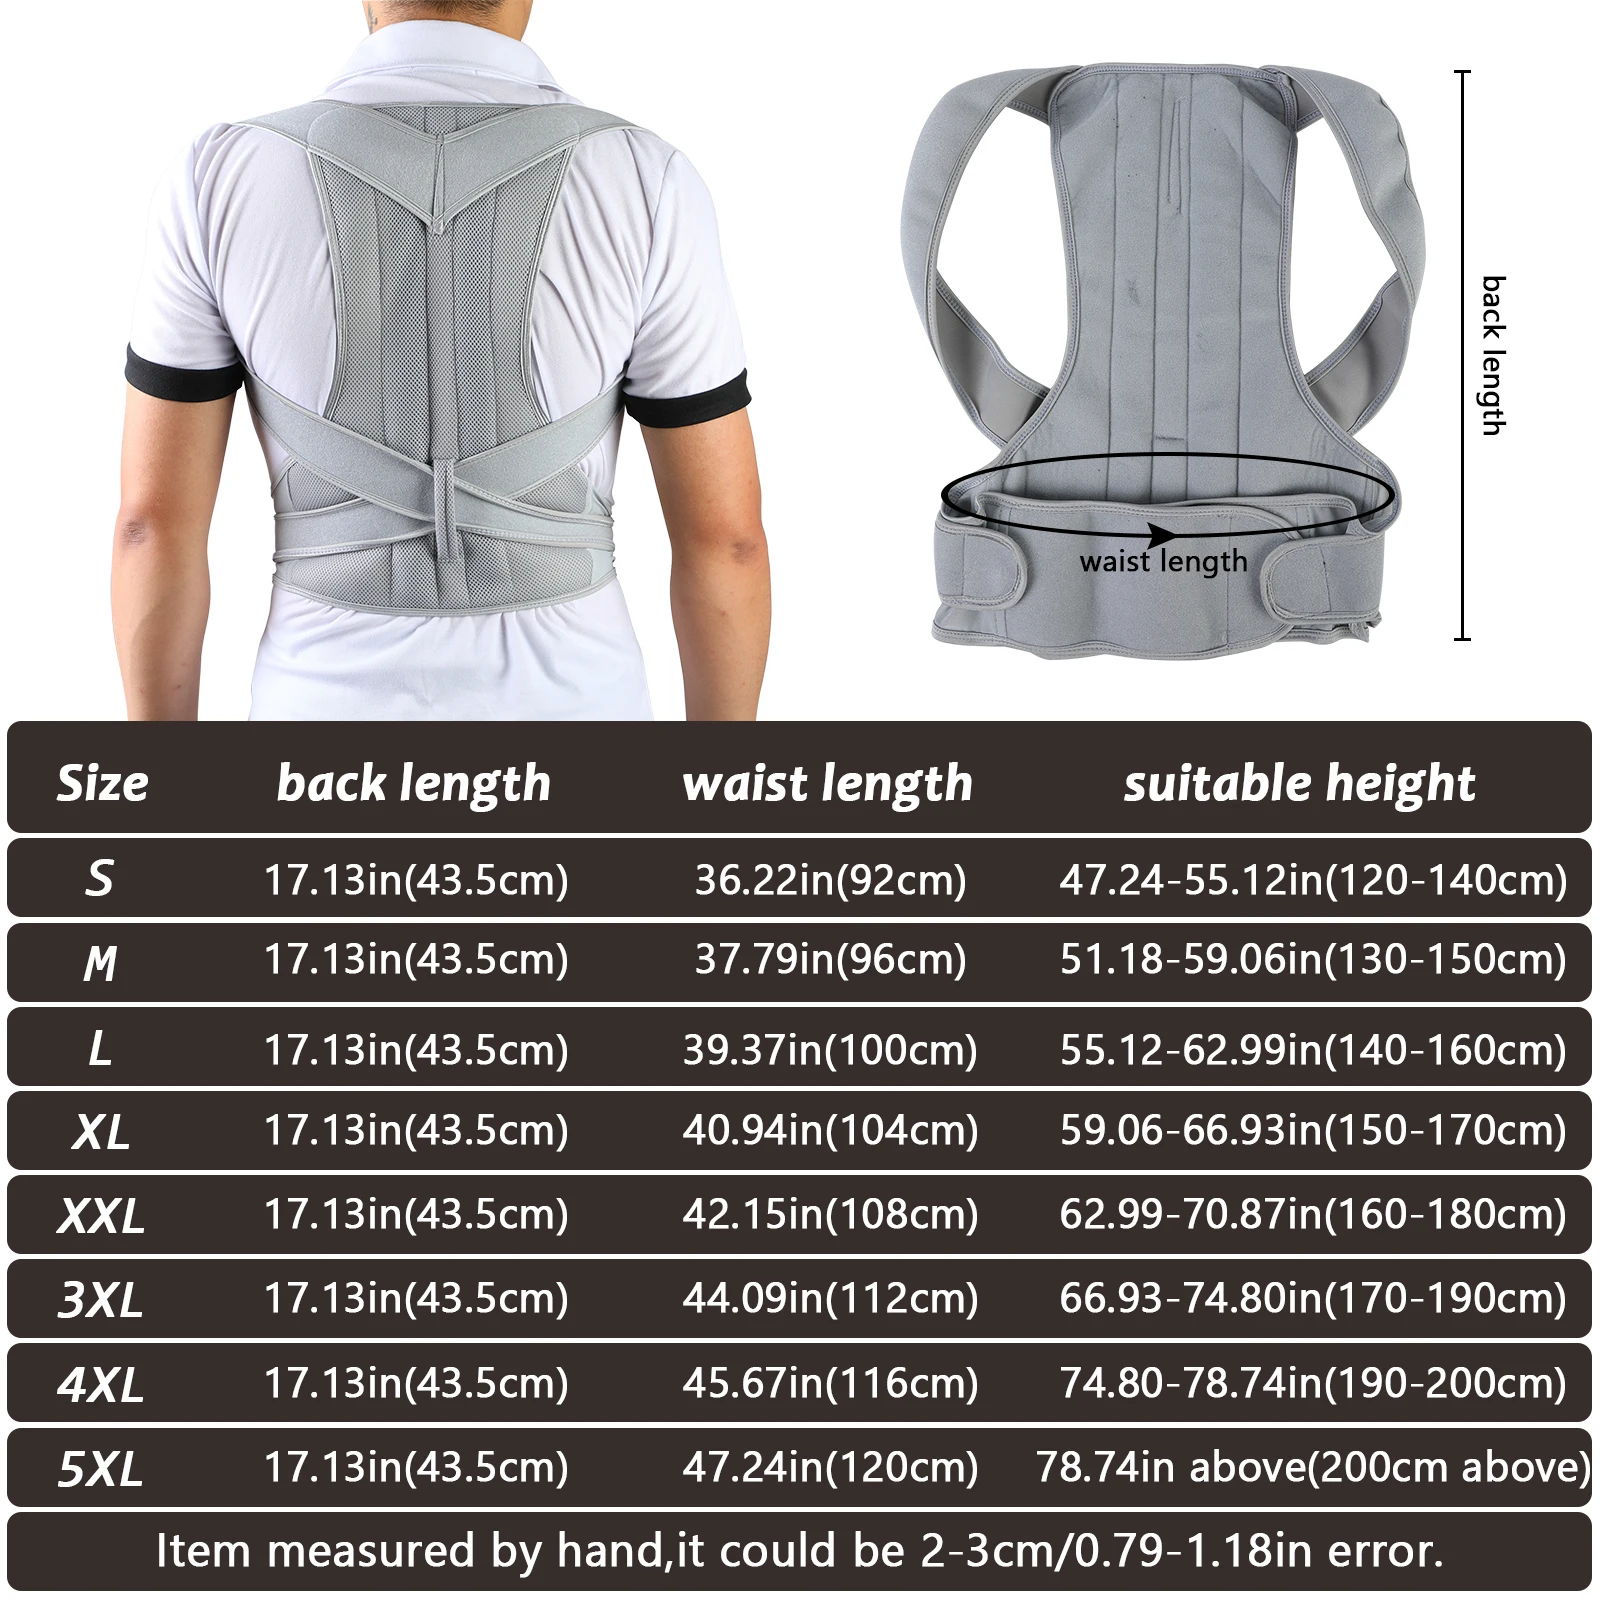 Back Waist Posture Corrector Adjustable Adult Correction Belt Trainer Shoulder Lumbar Brace Spine Support Vest | Спорт и развлечения